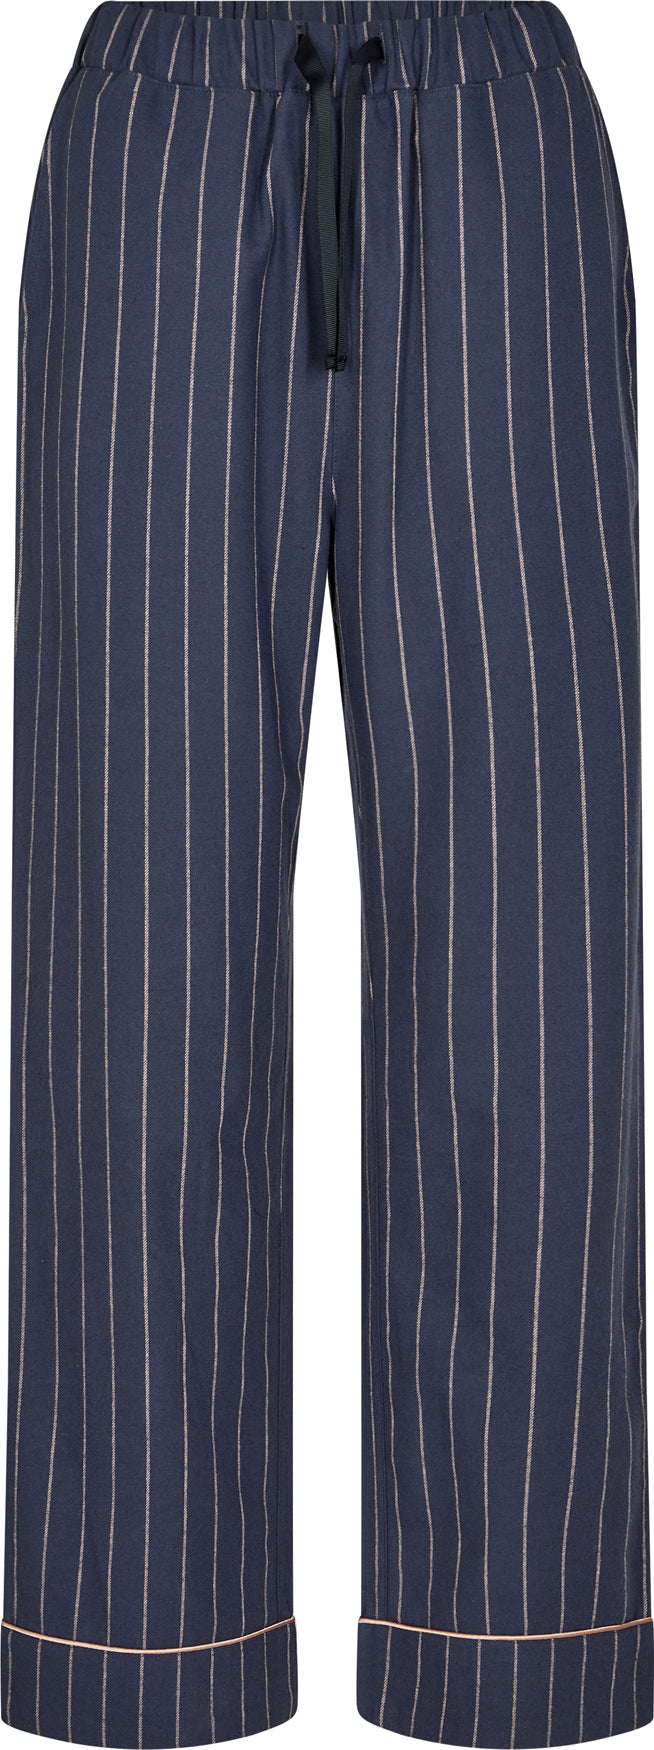 Pyjamasbukser 100% økologisk bomuld - blå